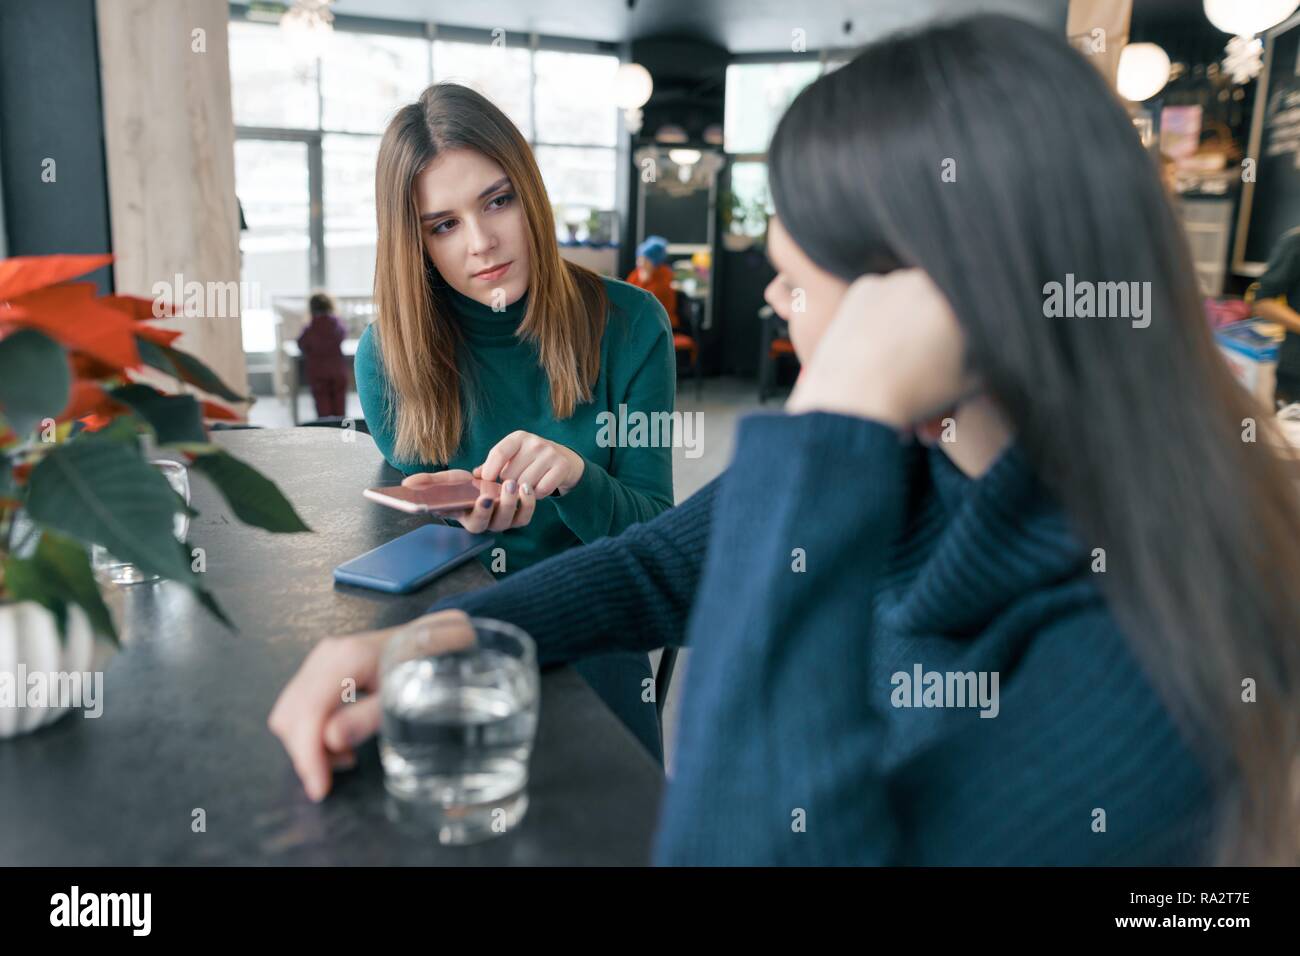 Hablando de las mujeres jóvenes, niñas sentados en invierno cafe sonreír y hablar, beber agua limpia en vidrio y a través de teléfono móvil, red poinsettia navidad Foto de stock